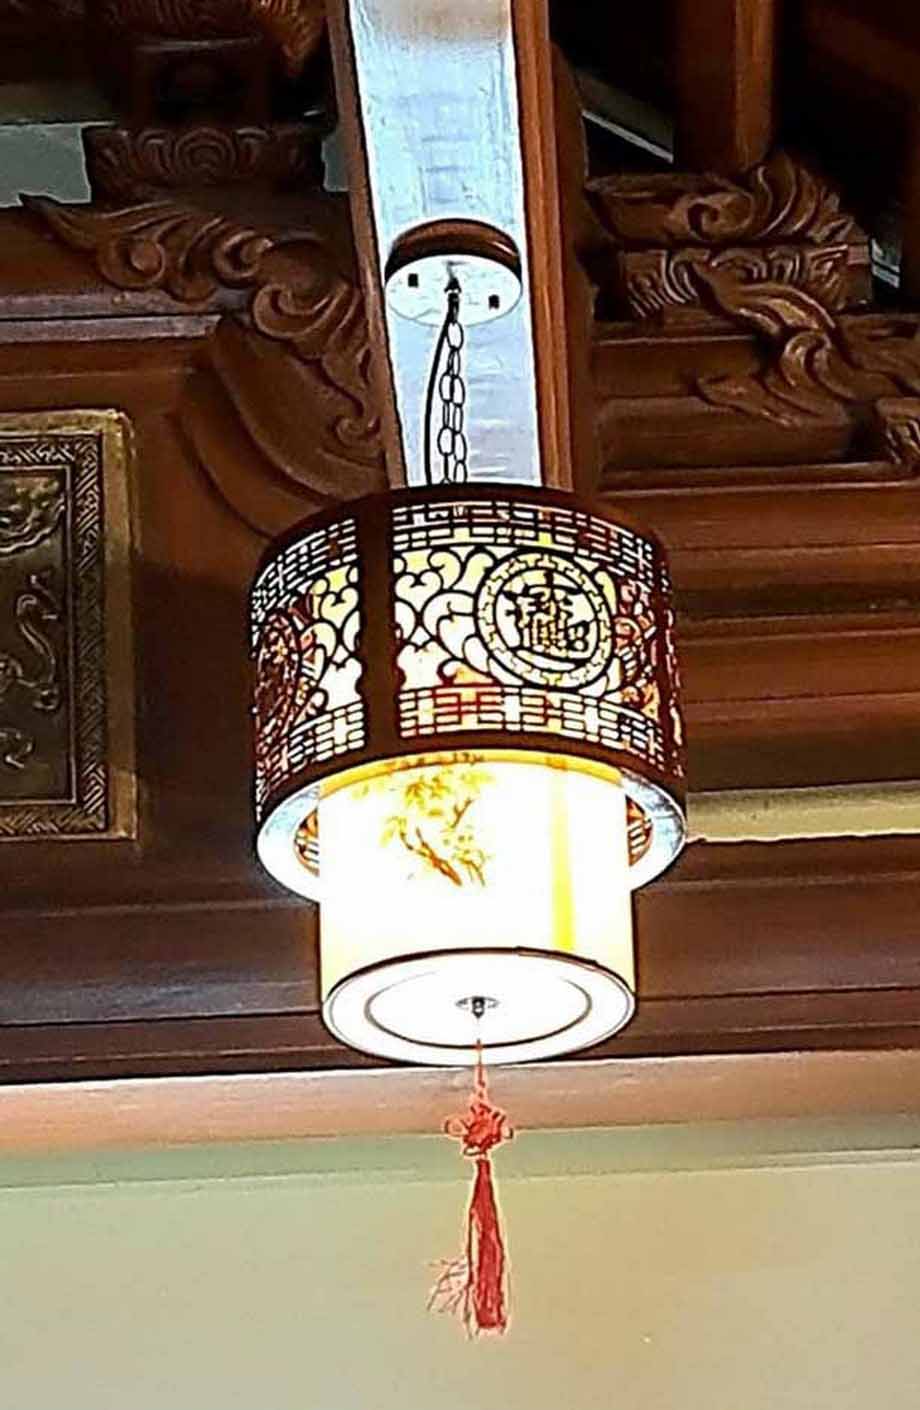 Thi công đèn phòng thờ cho nhà từ đường tại Thanh Hóa > Thi công đèn phòng thờ cho nhà từ đường tại Thanh Hóa